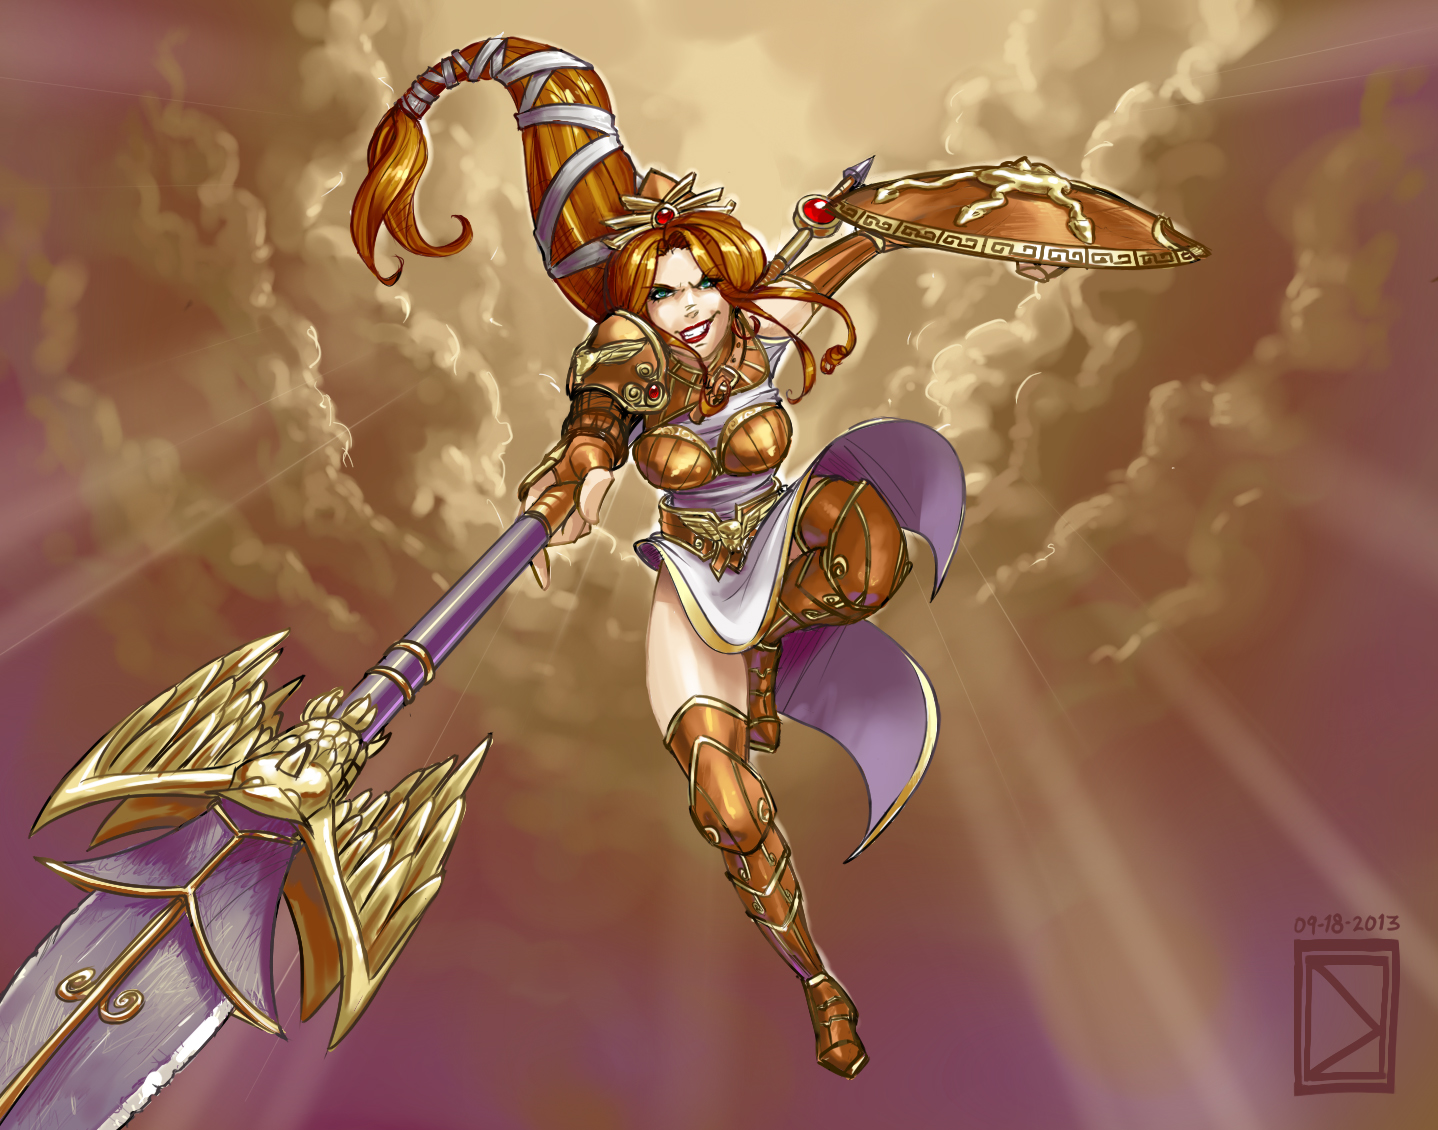 Athena Colored by DavidValdez 1438x1130